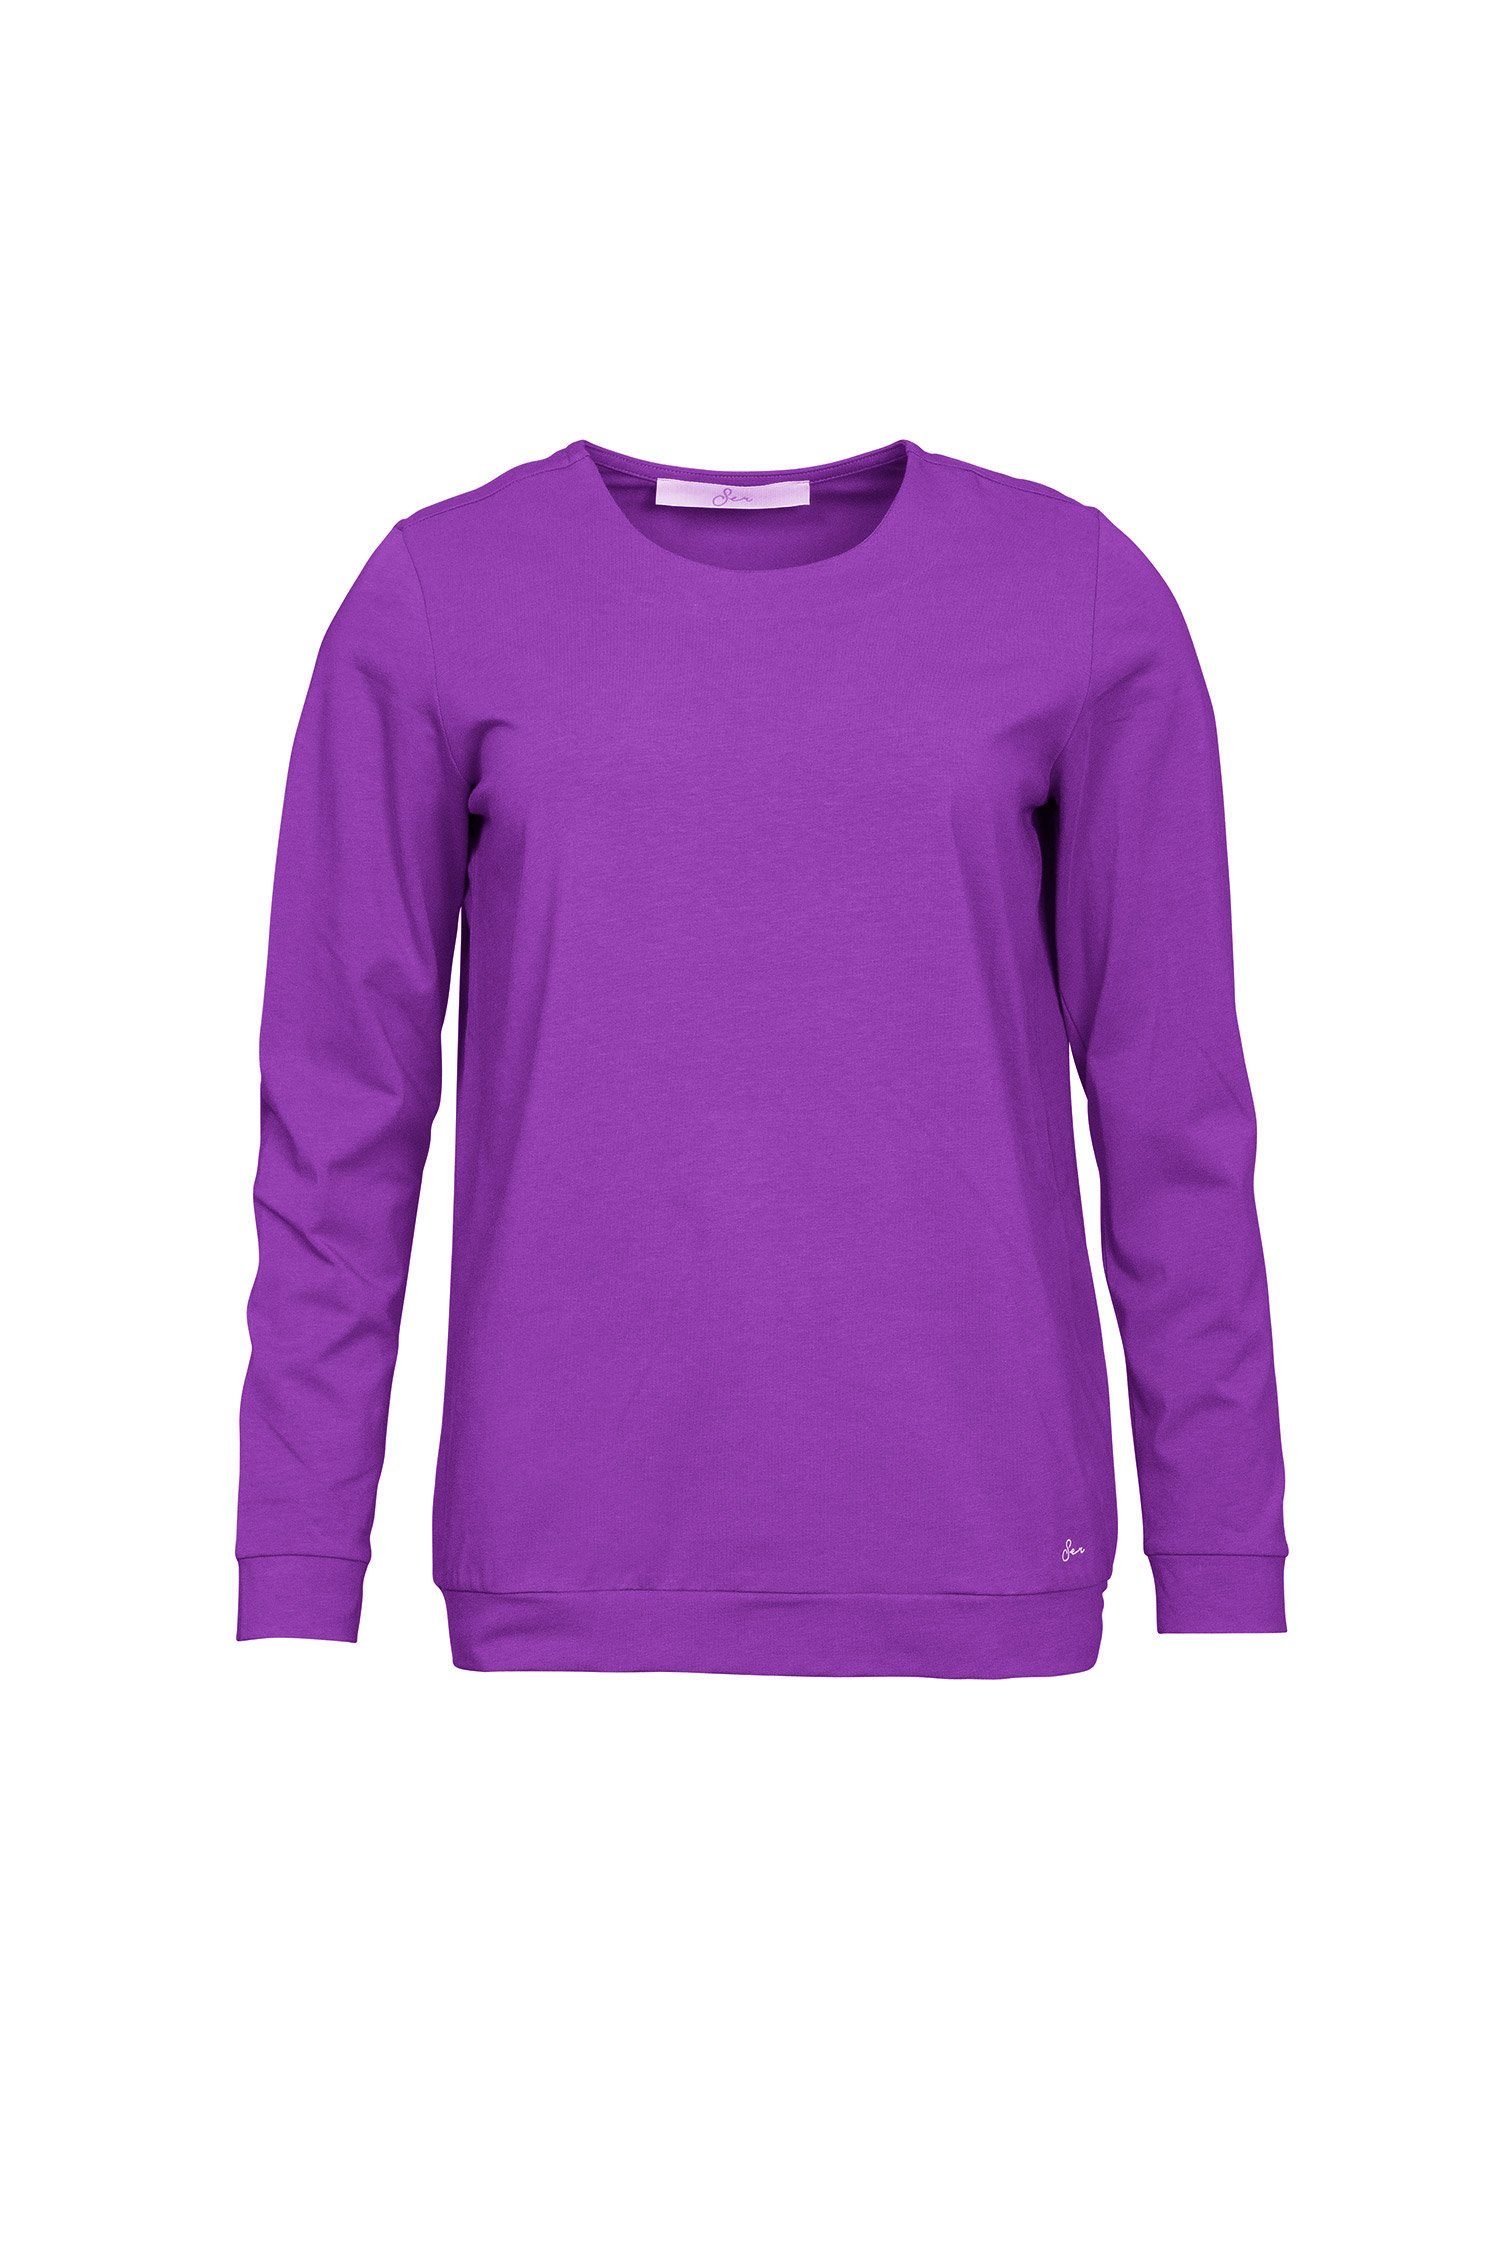 SER Langarmshirt Shirt Rundhals einfarbig W9923101W auch in großen Größen 828 purple melange